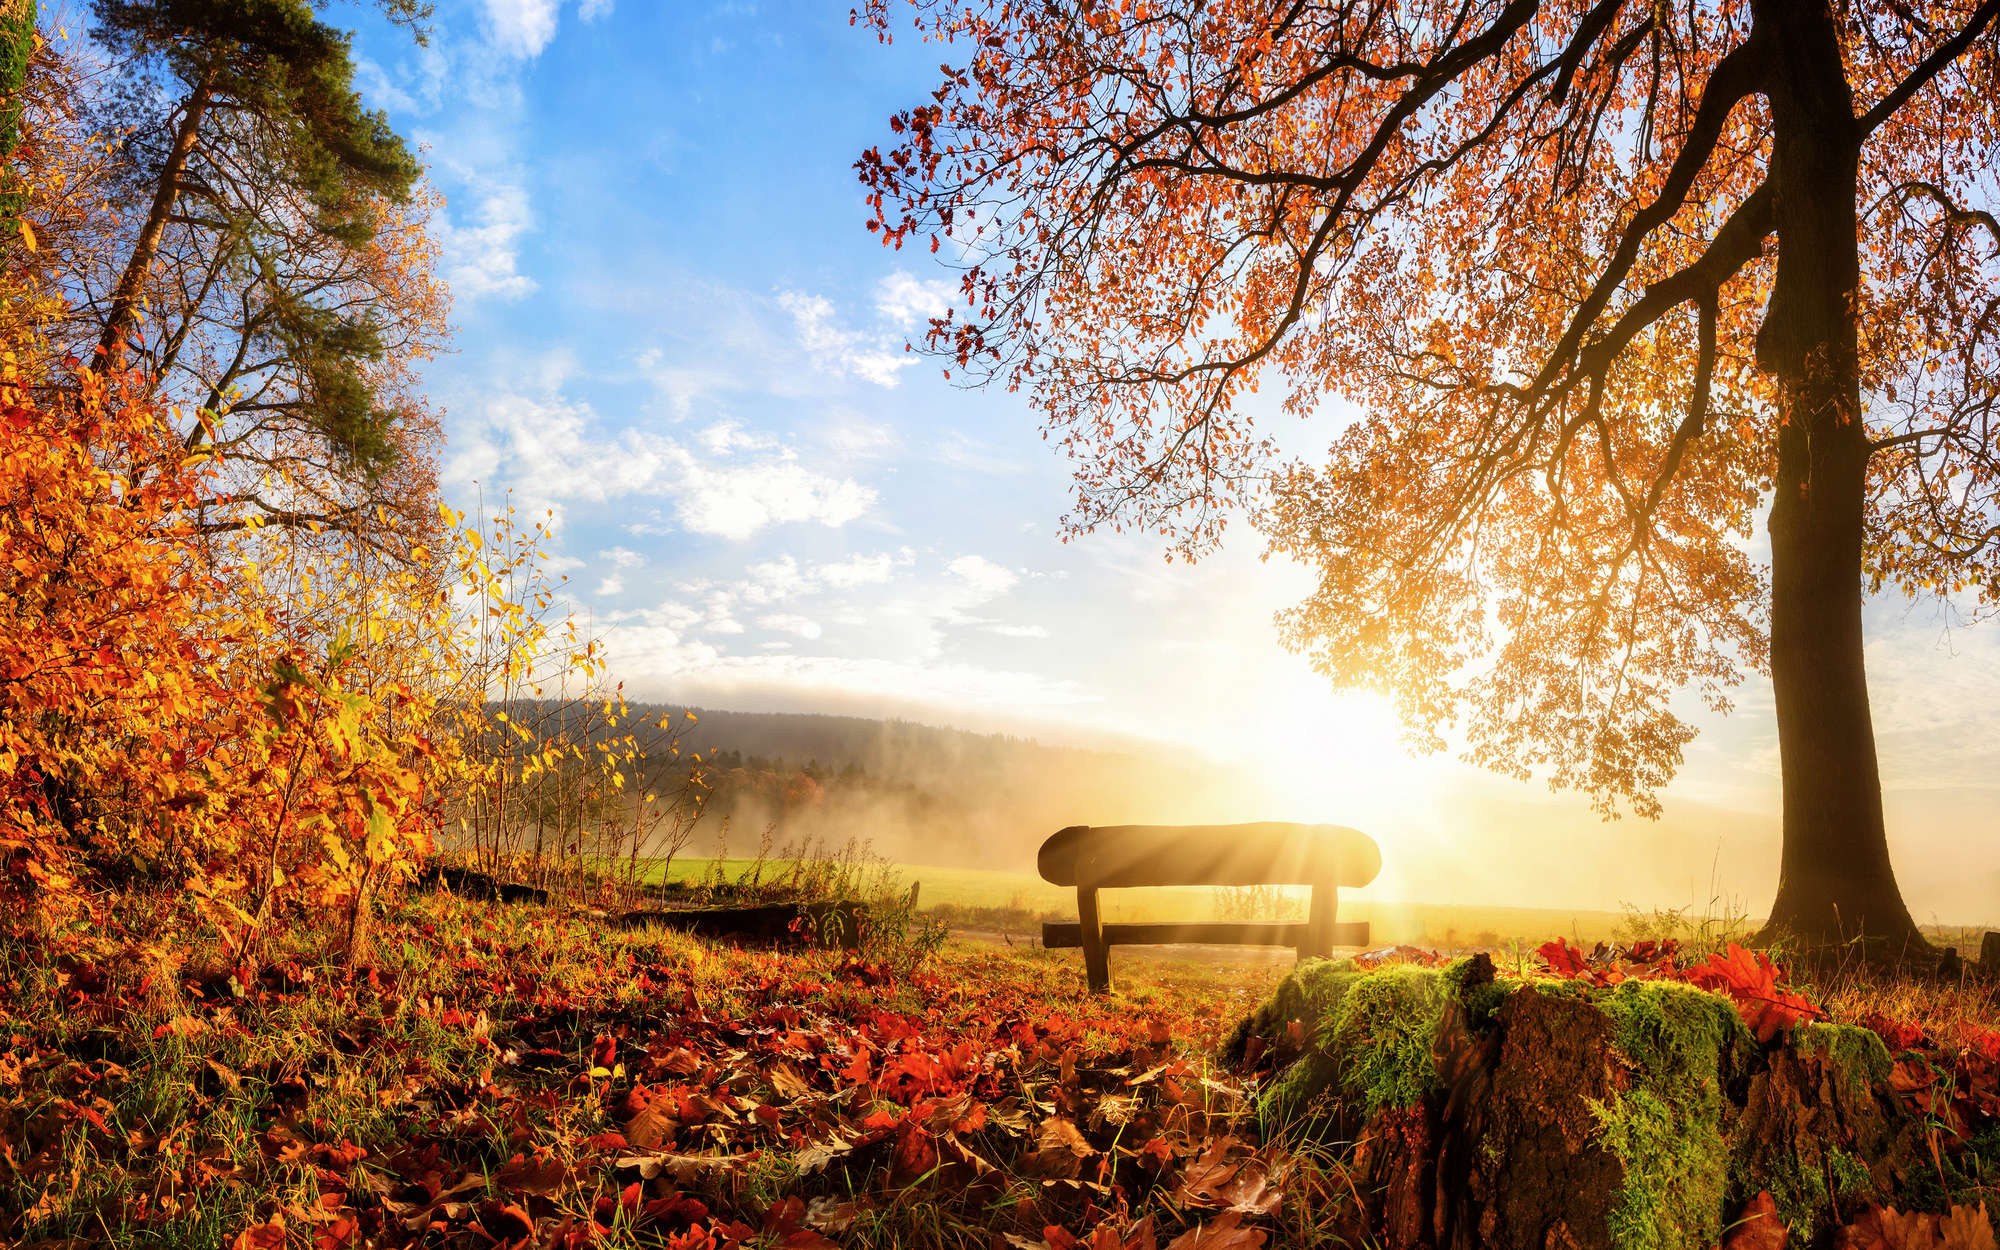             Fototapete Bank im Wald an einem Herbstmorgen – Mattes Glattvlies
        